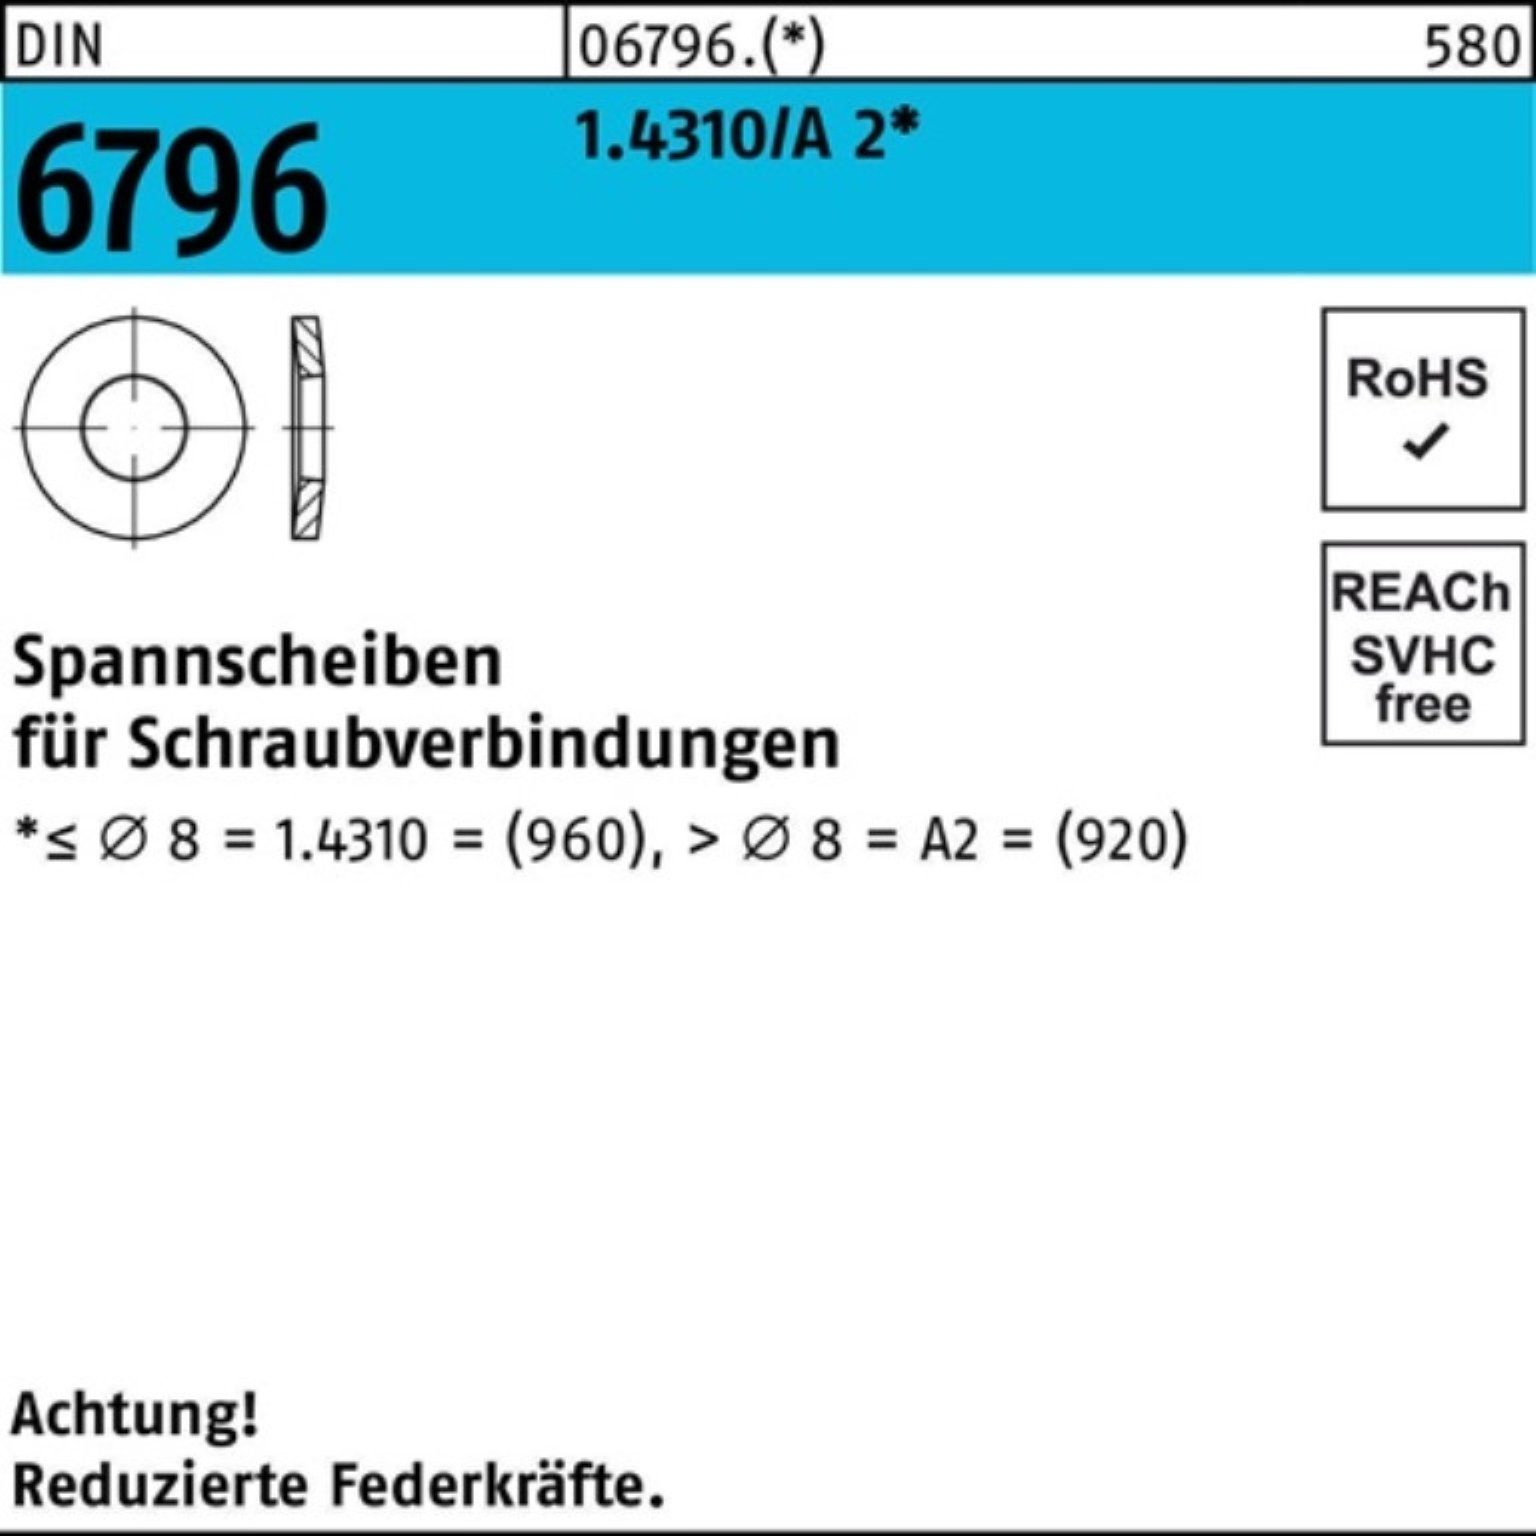 Reyher Spannscheibe 500er Pack Spannscheibe DIN 6796 10x 23x 2,5 1.4310/A 2 500 Stück DIN